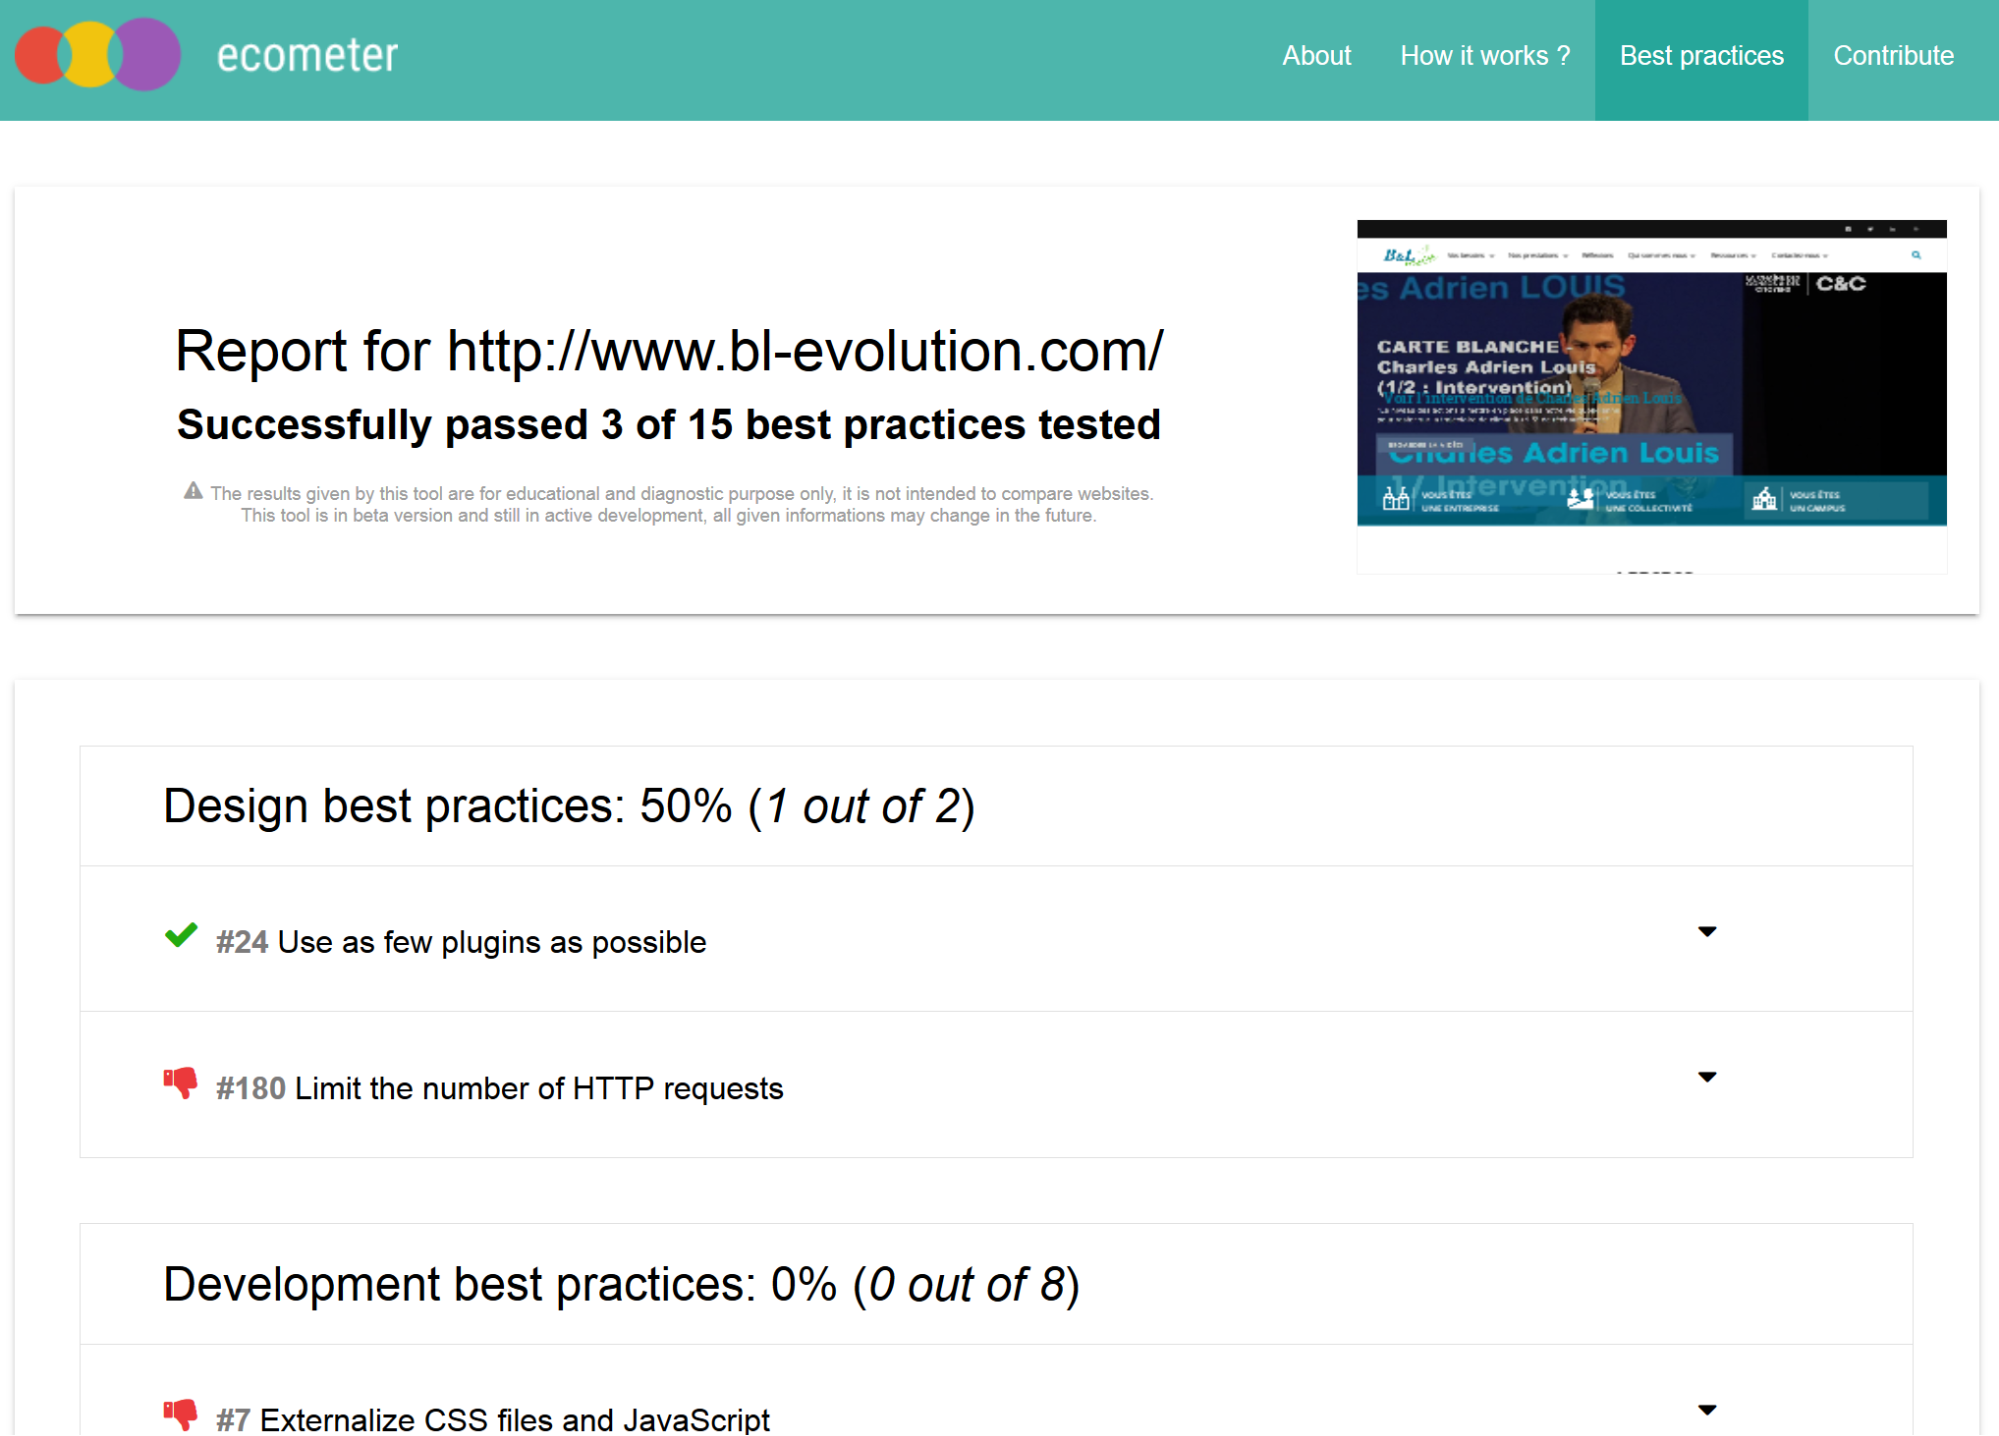 Résultat pour le site bl-evolution.com, chaque bonne pratique est évaluée (oui/non).